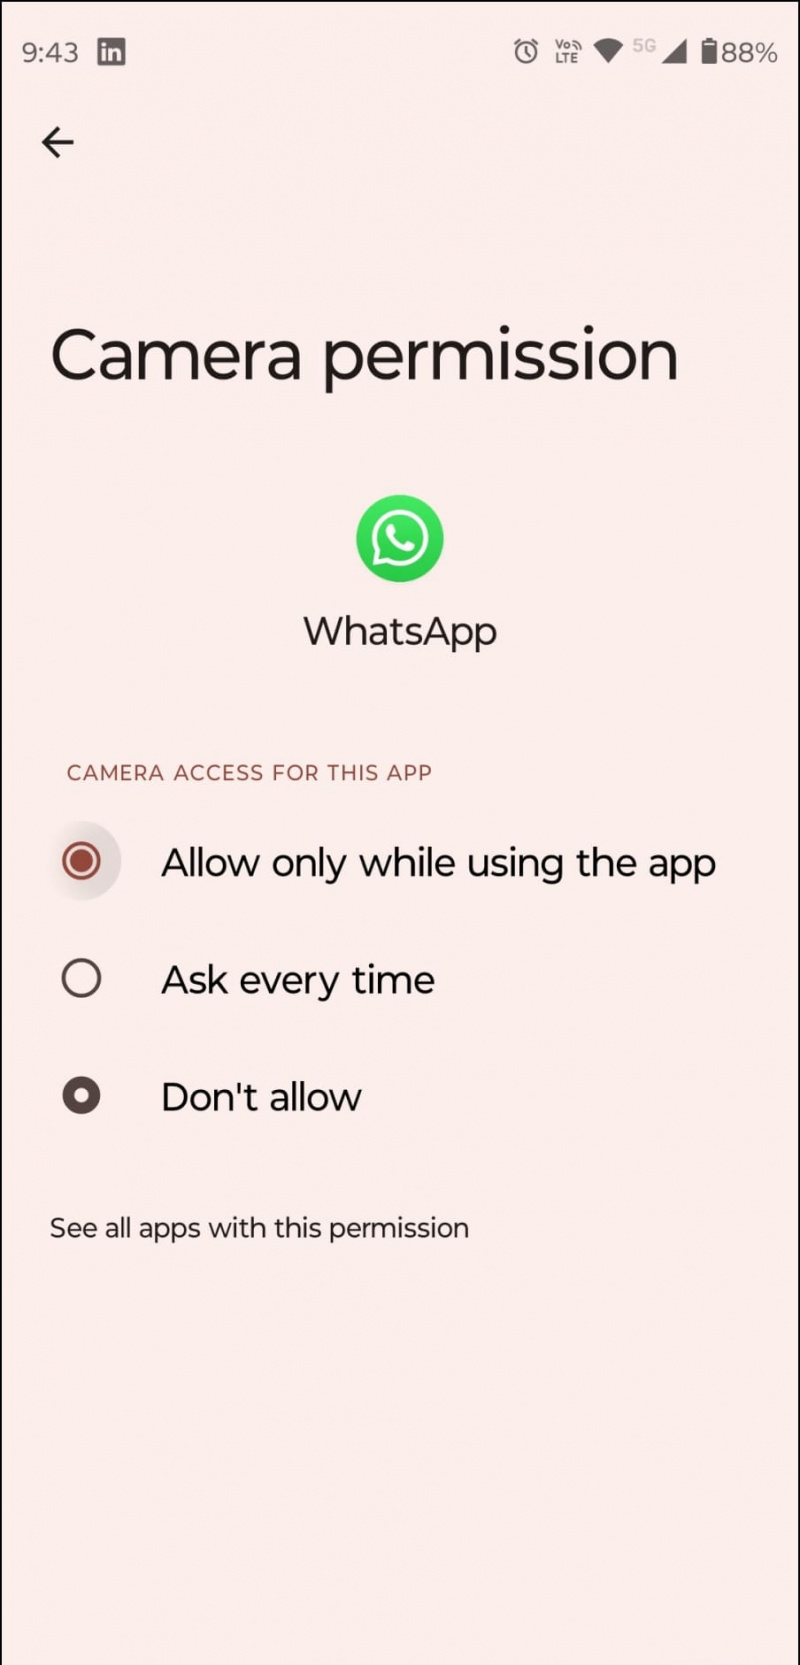   Salli WhatsApp-kameran käyttö kahdelle laitteelle kirjautumiseen